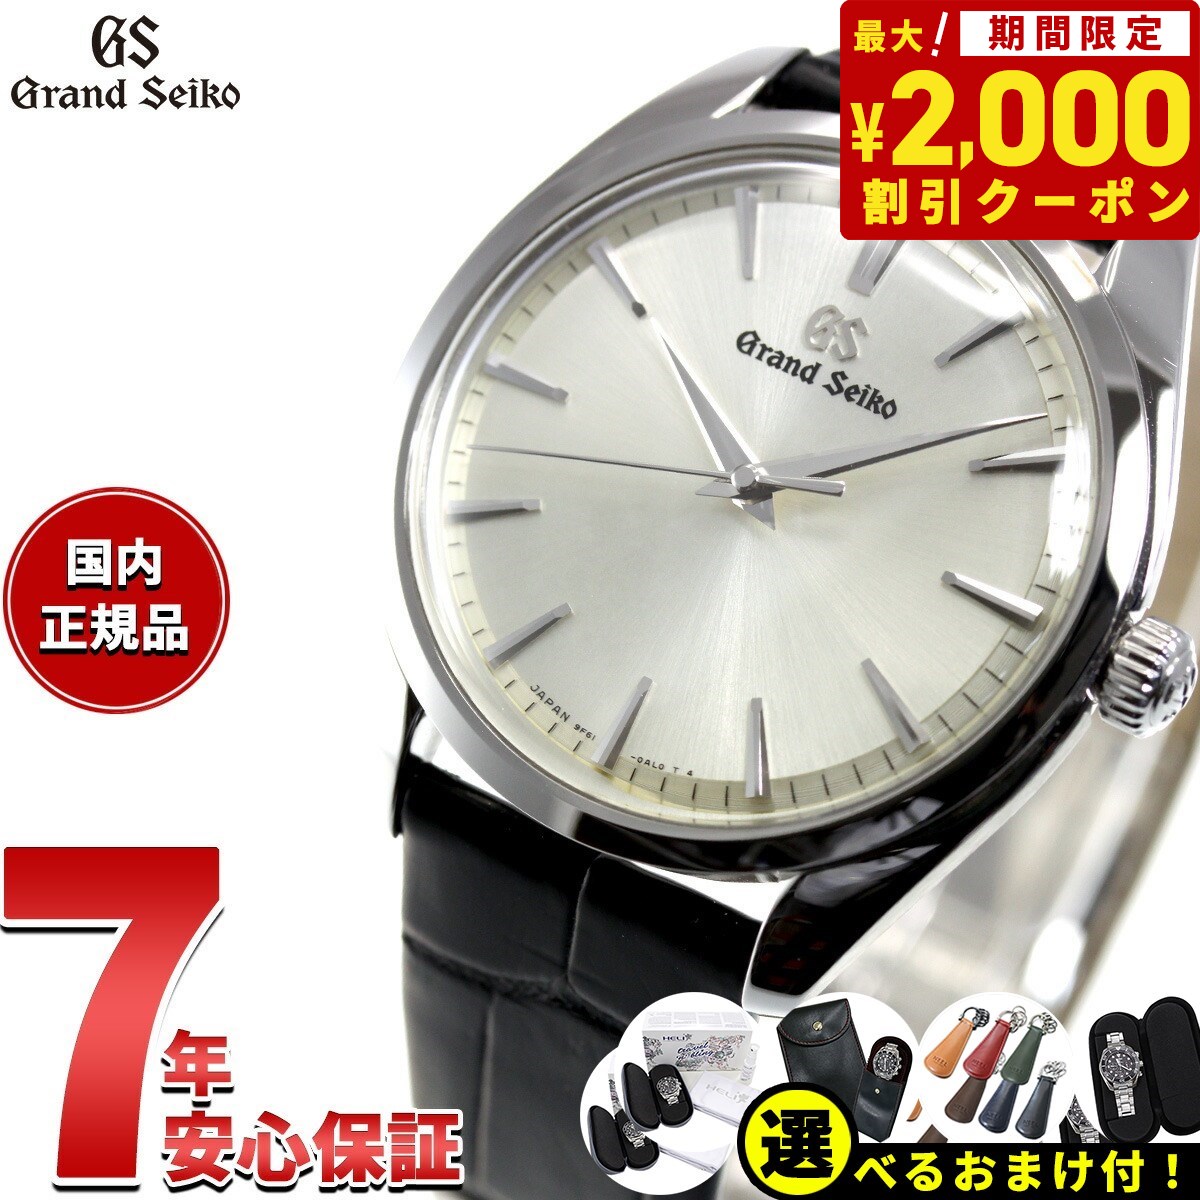 グランドセイコー GRAND SEIKO 腕時計 ペアモデル メンズ SBGX331 エレガンス Elegance Collection SBGX331